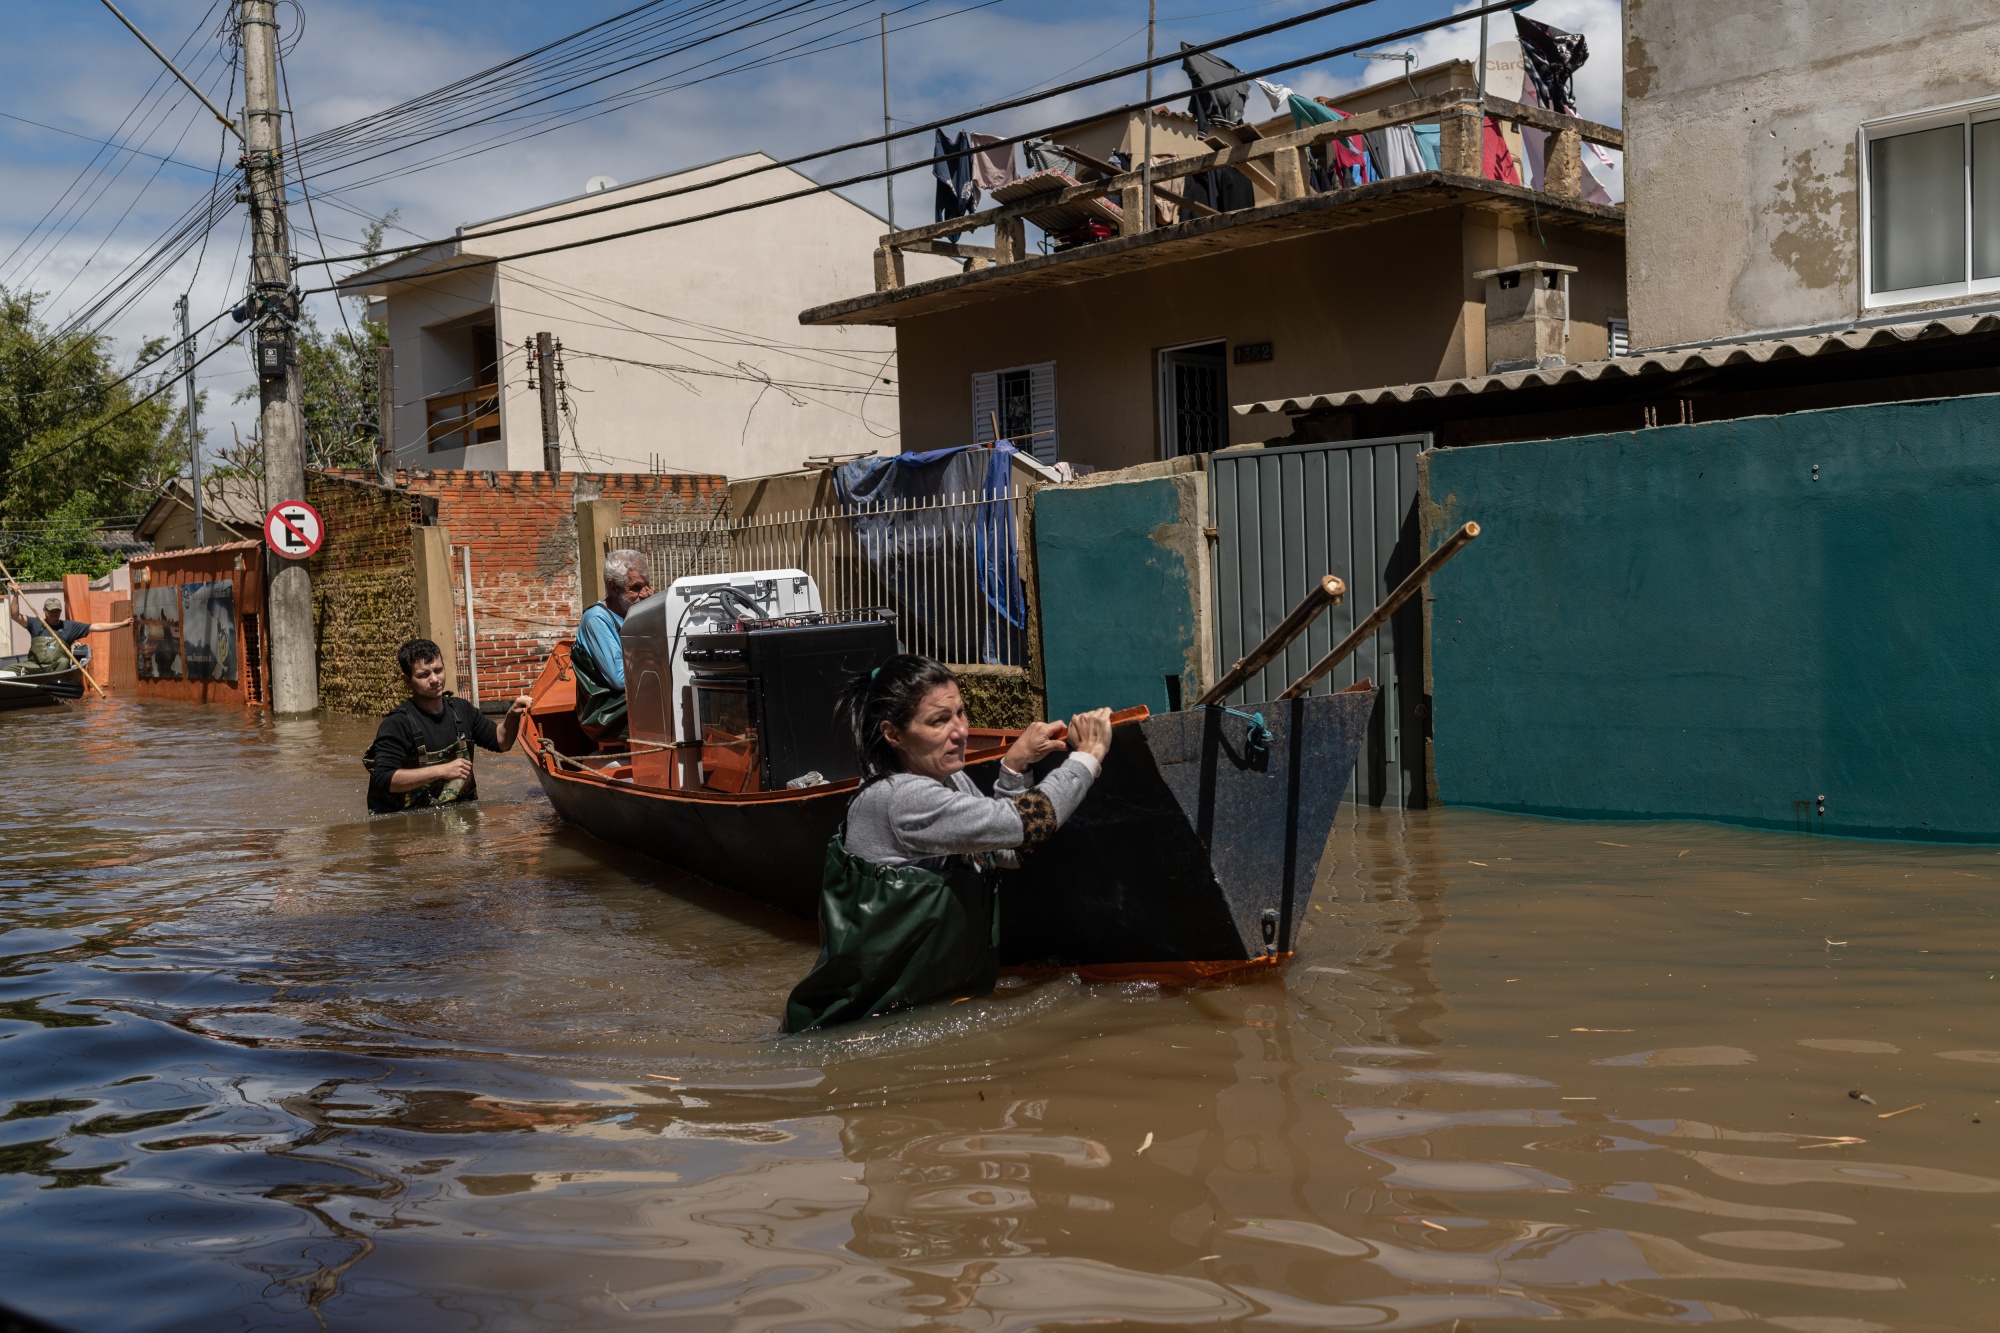 Brezilya'nın Güney Most Eyaletindeki Ölümcül Fırtınaların Ardından Hasar ve Su Baskını